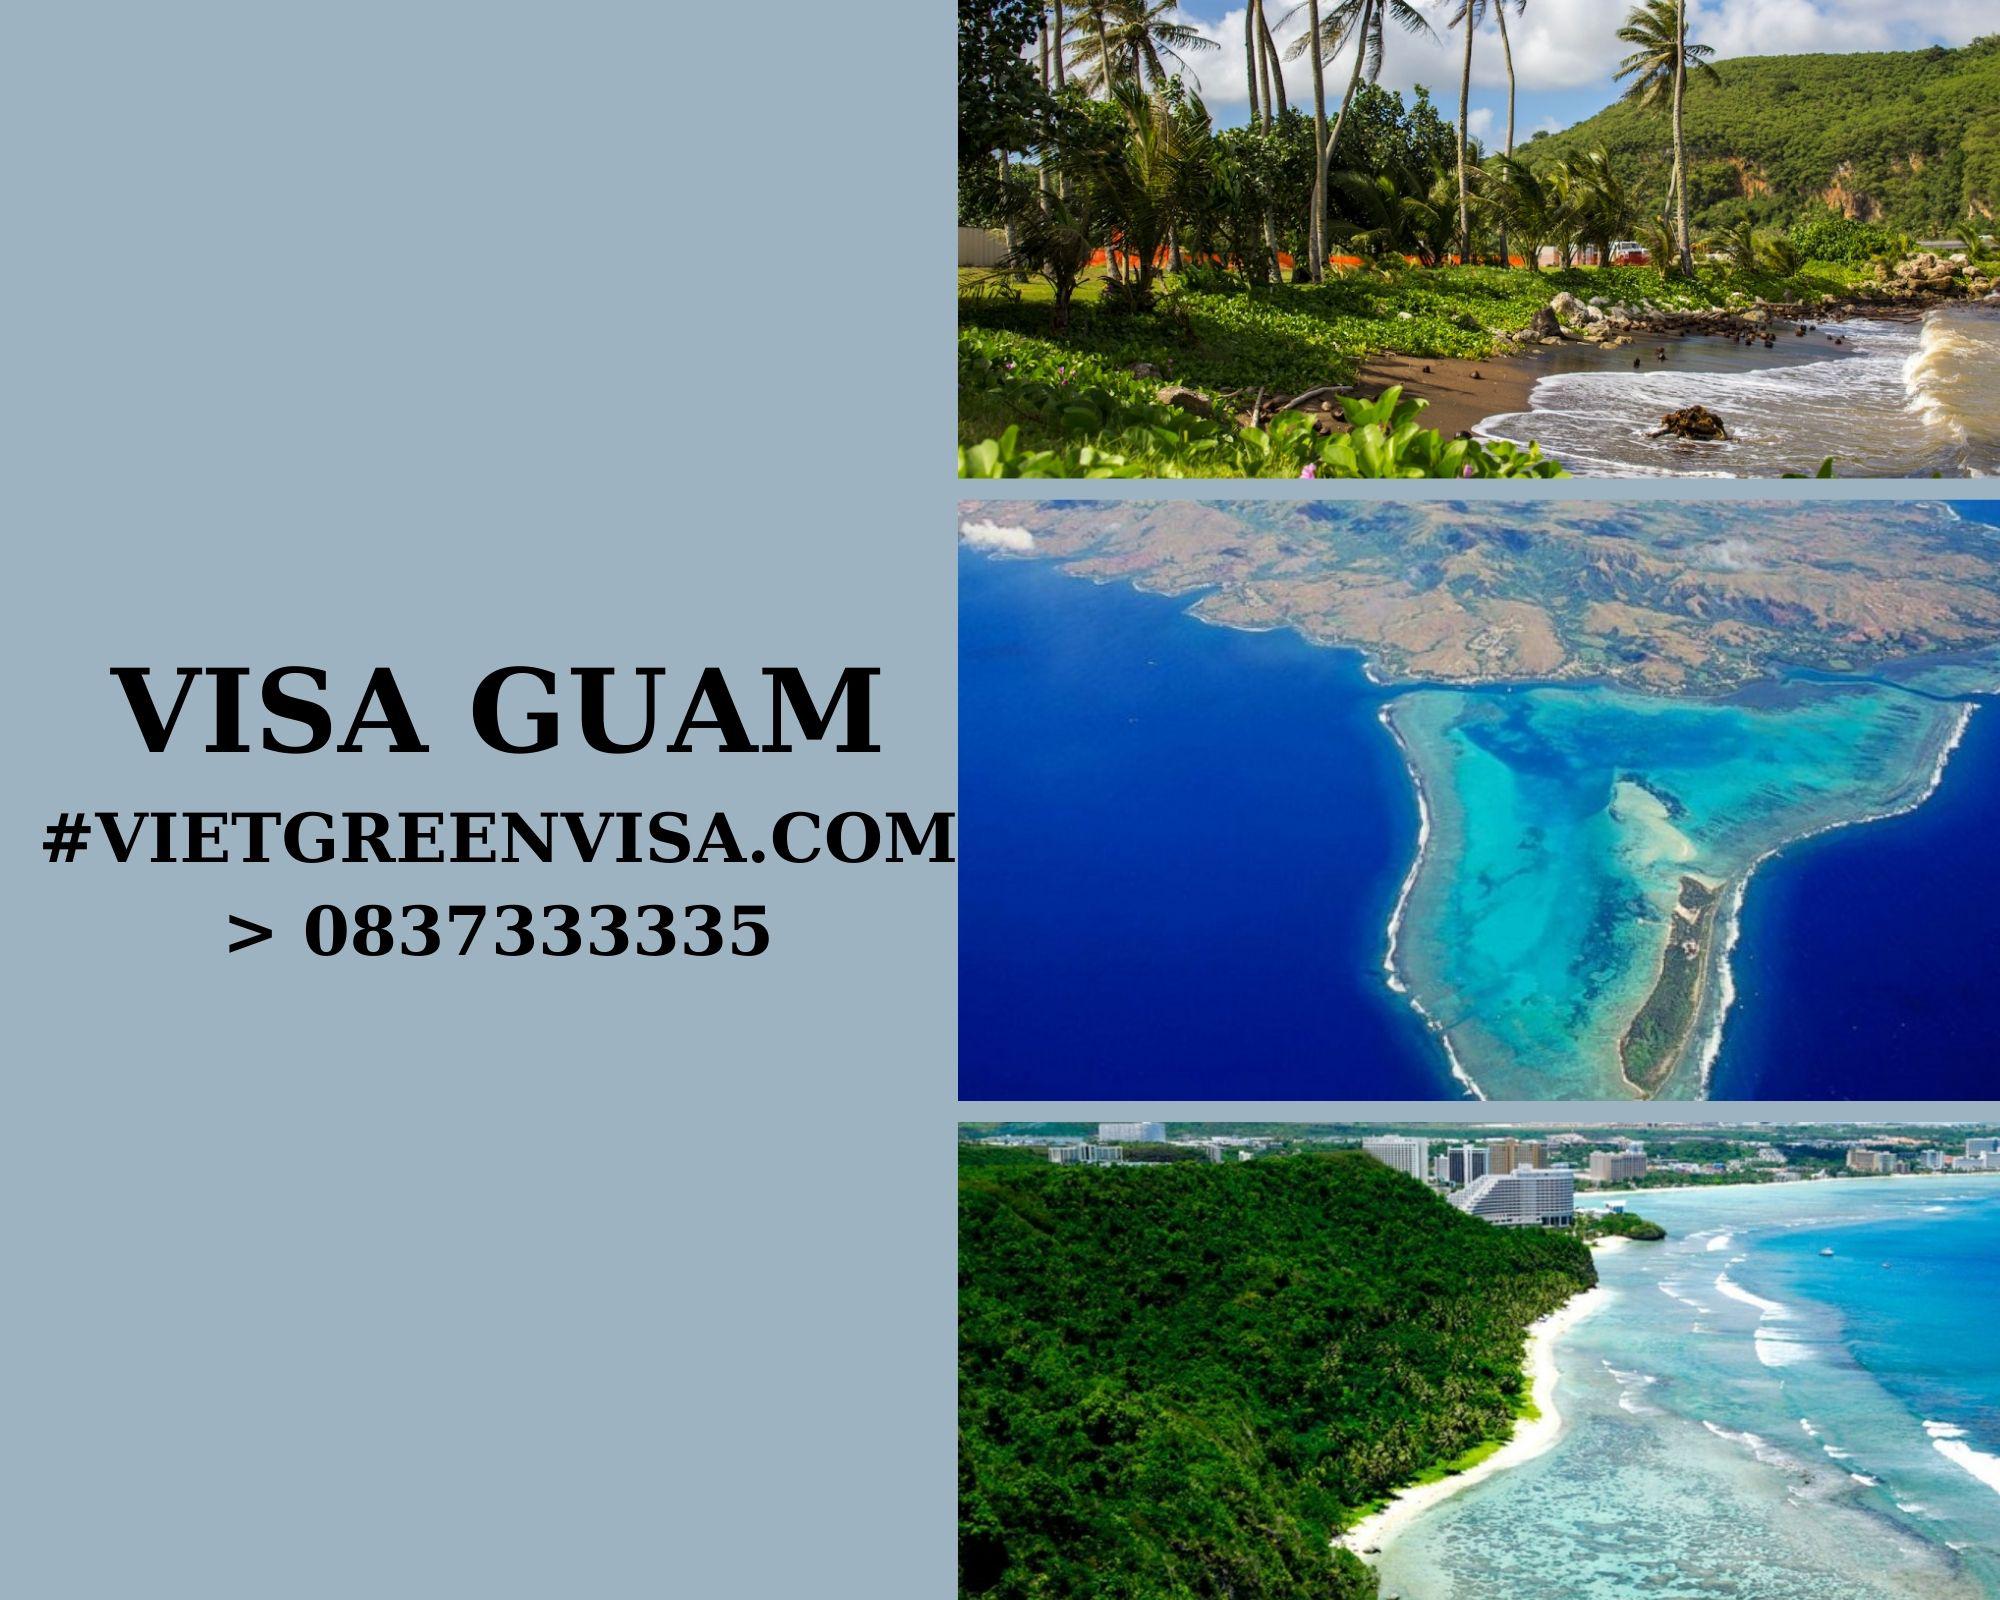 Làm Visa Guam thăm thân uy tín, nhanh chóng, giá rẻ